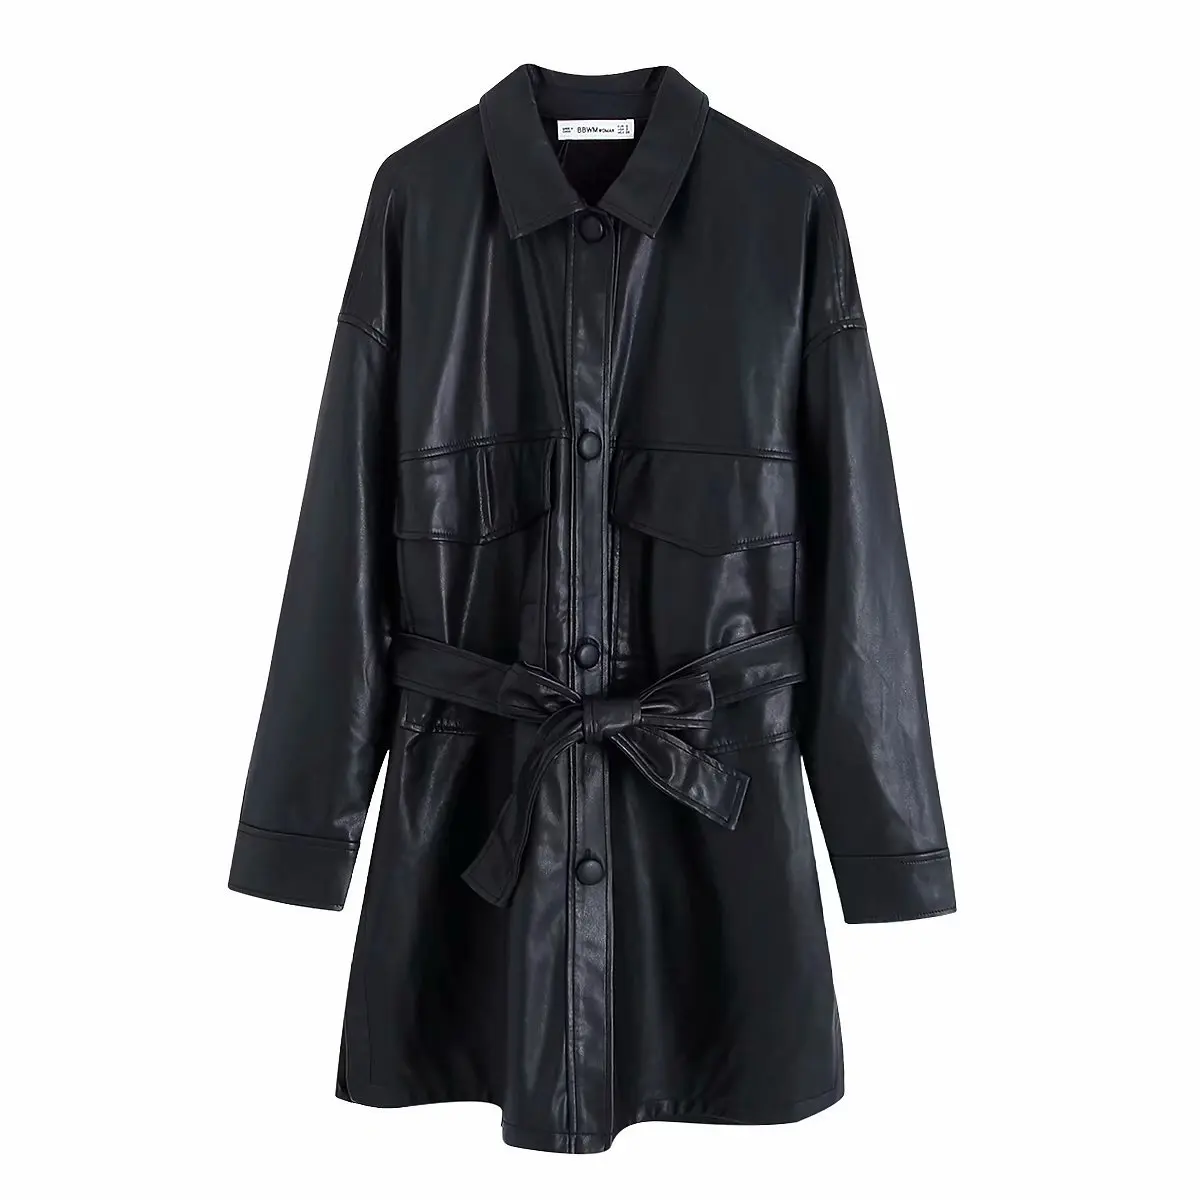 Зимняя куртка из искусственной кожи с поясом, Женская байкерская куртка из искусственной кожи, уличная куртка в стиле панк, мотоциклетная куртка с поясом, женская черная кожаная куртка, пальто - Цвет: black